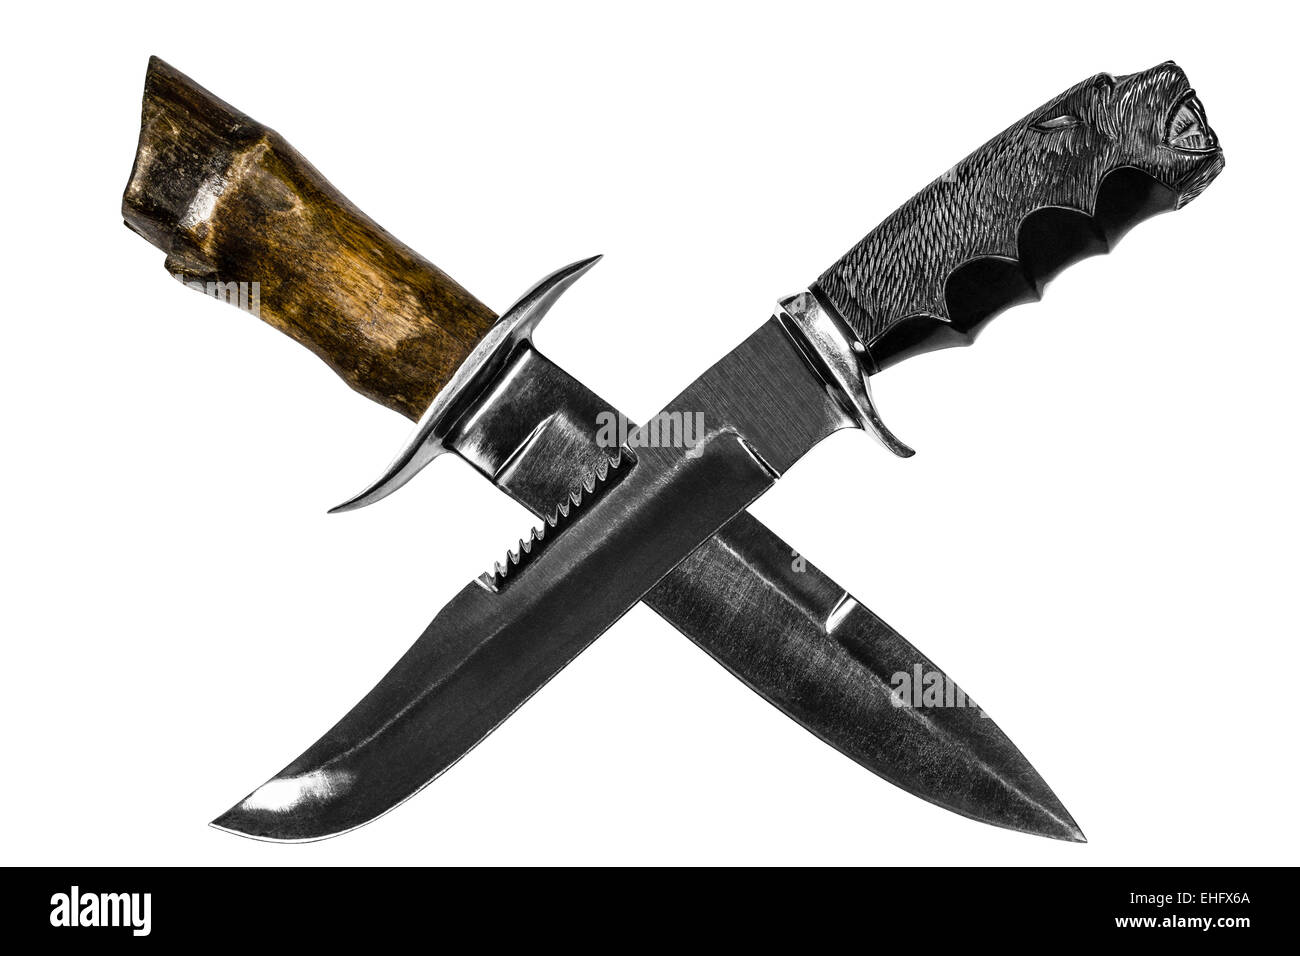 Hunting knifes isolated on white background Stock Photo